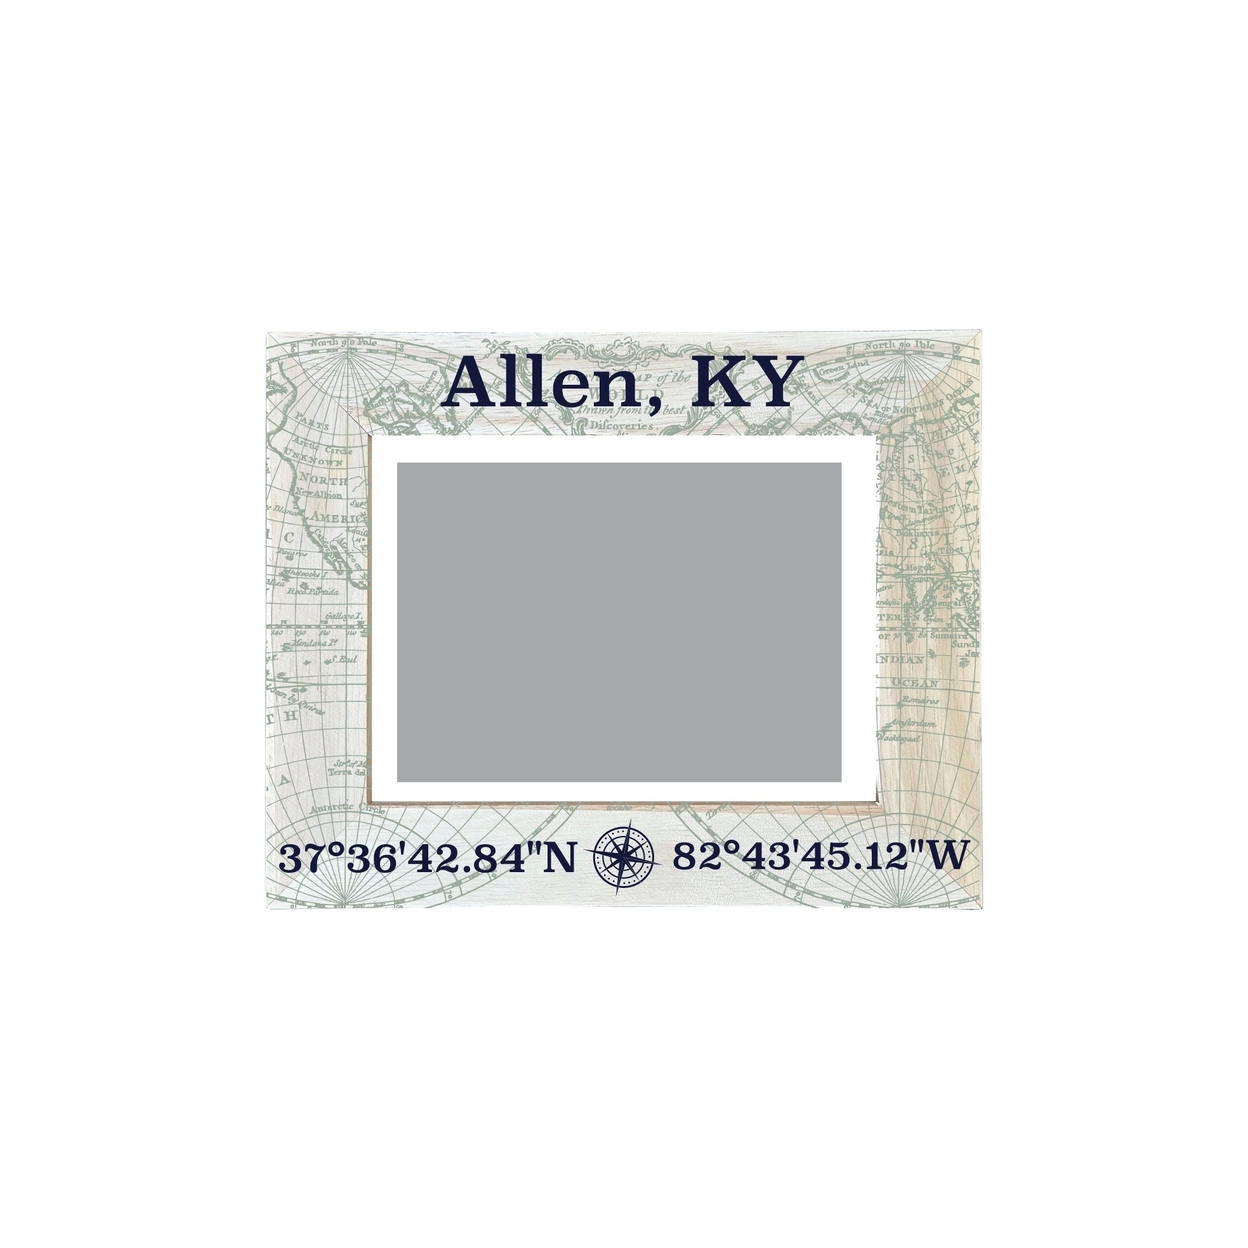 Allen Kentucky Souvenir Wooden Photo Frame Compass Coordinates Design Matted To 4 X 6